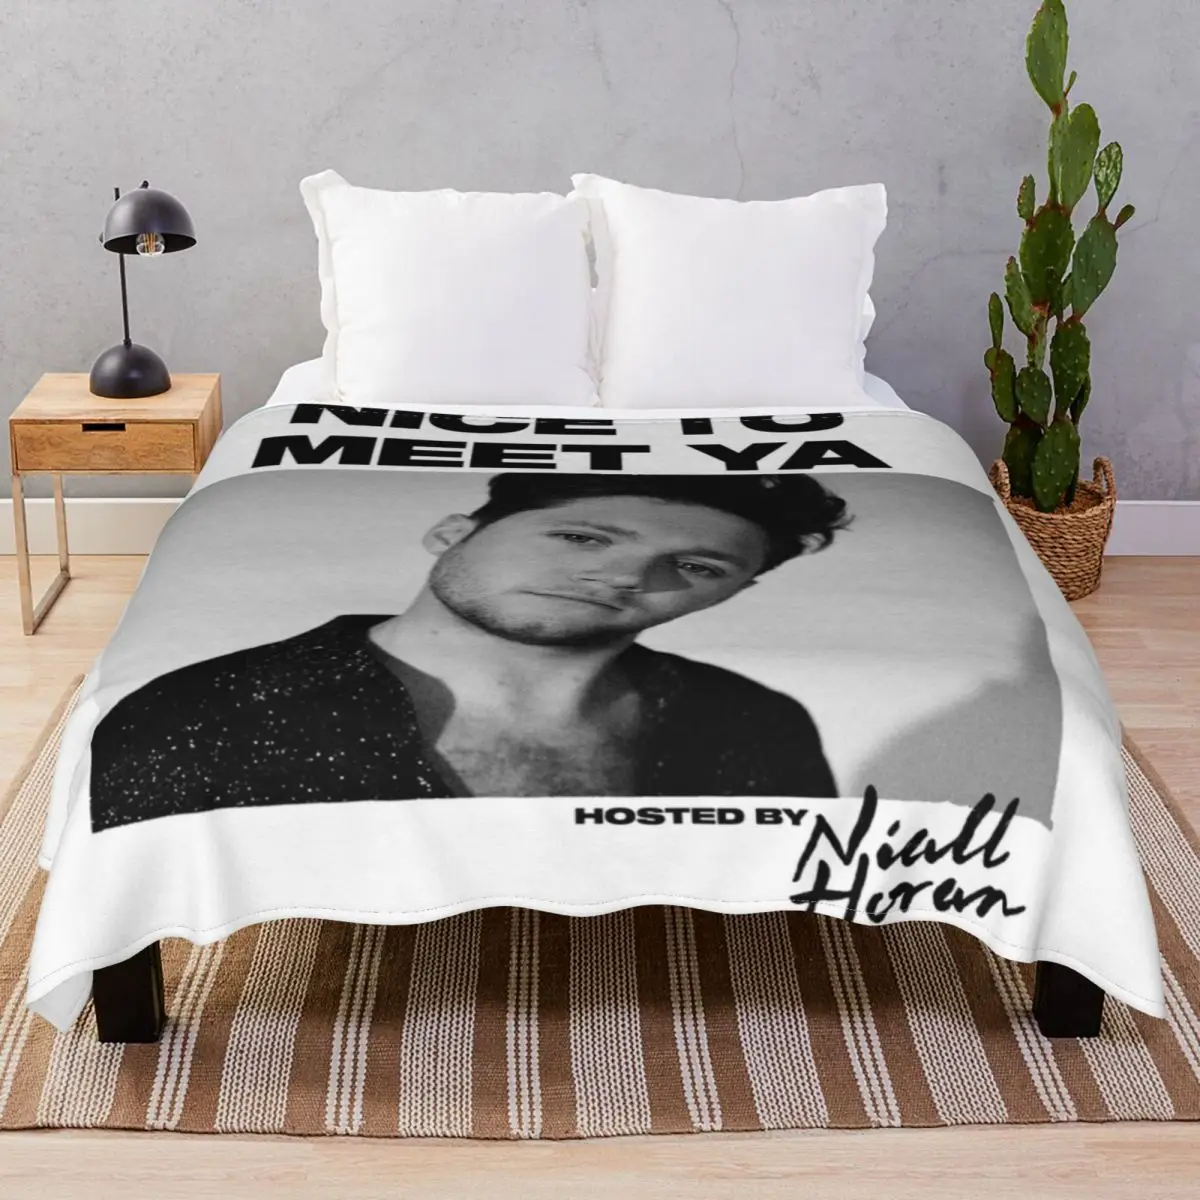 

Одеяло Niall Nice To Meet Ya флисовое, воздухопроницаемое покрывало для постельного белья, дивана, путешествий, офиса, осень/зима